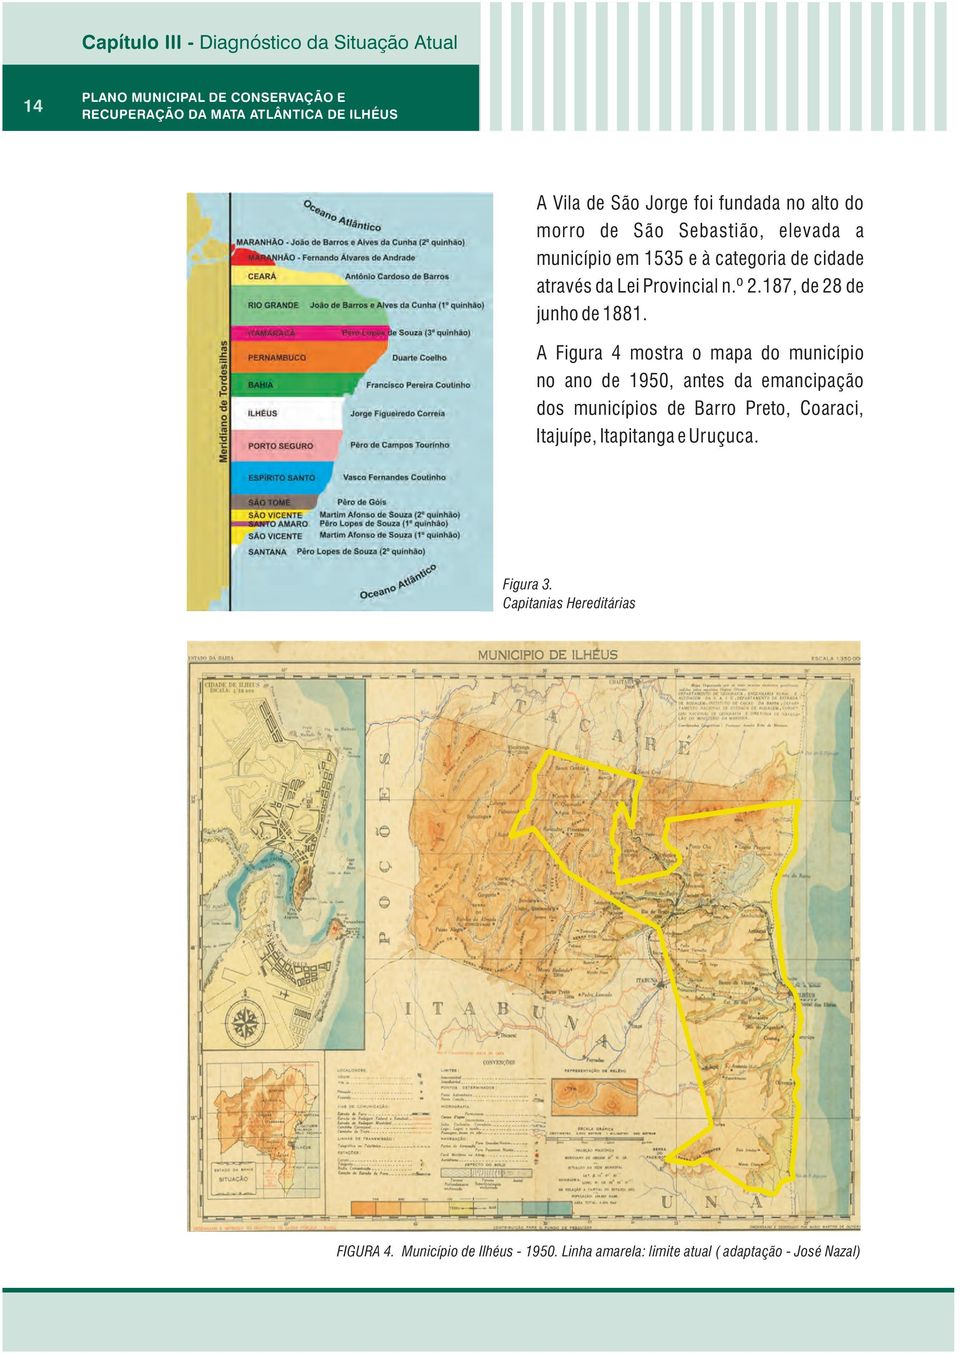 A Figura 4 mostra o mapa do município no ano de 1950, antes da emancipação dos municípios de Barro Preto,